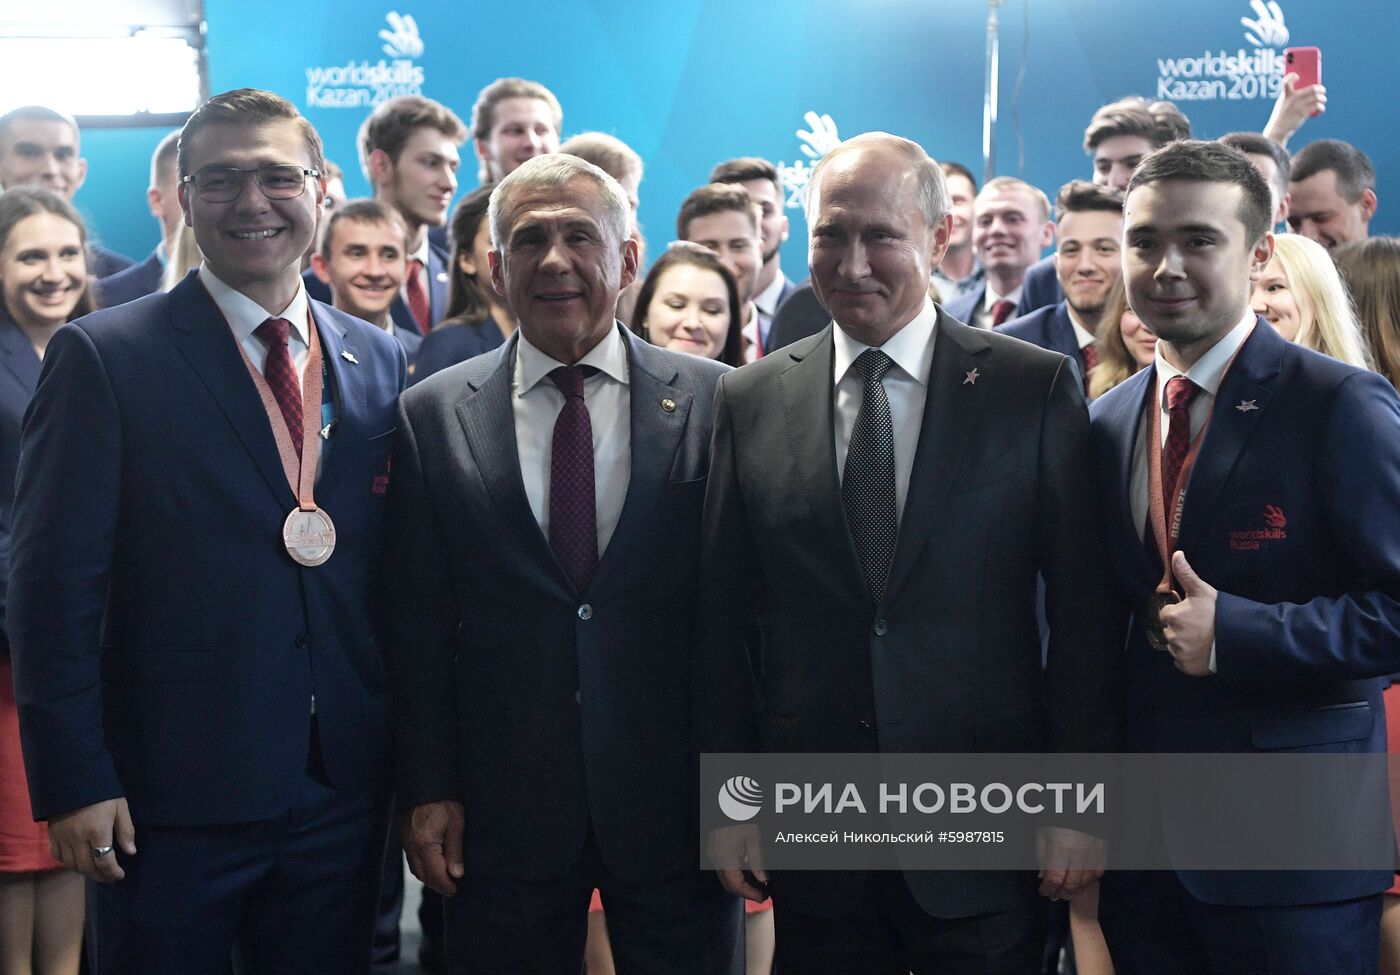 Президент РФ В. Путин принял участие в церемонии закрытия чемпионата мира WorldSkills 2019 в Казани